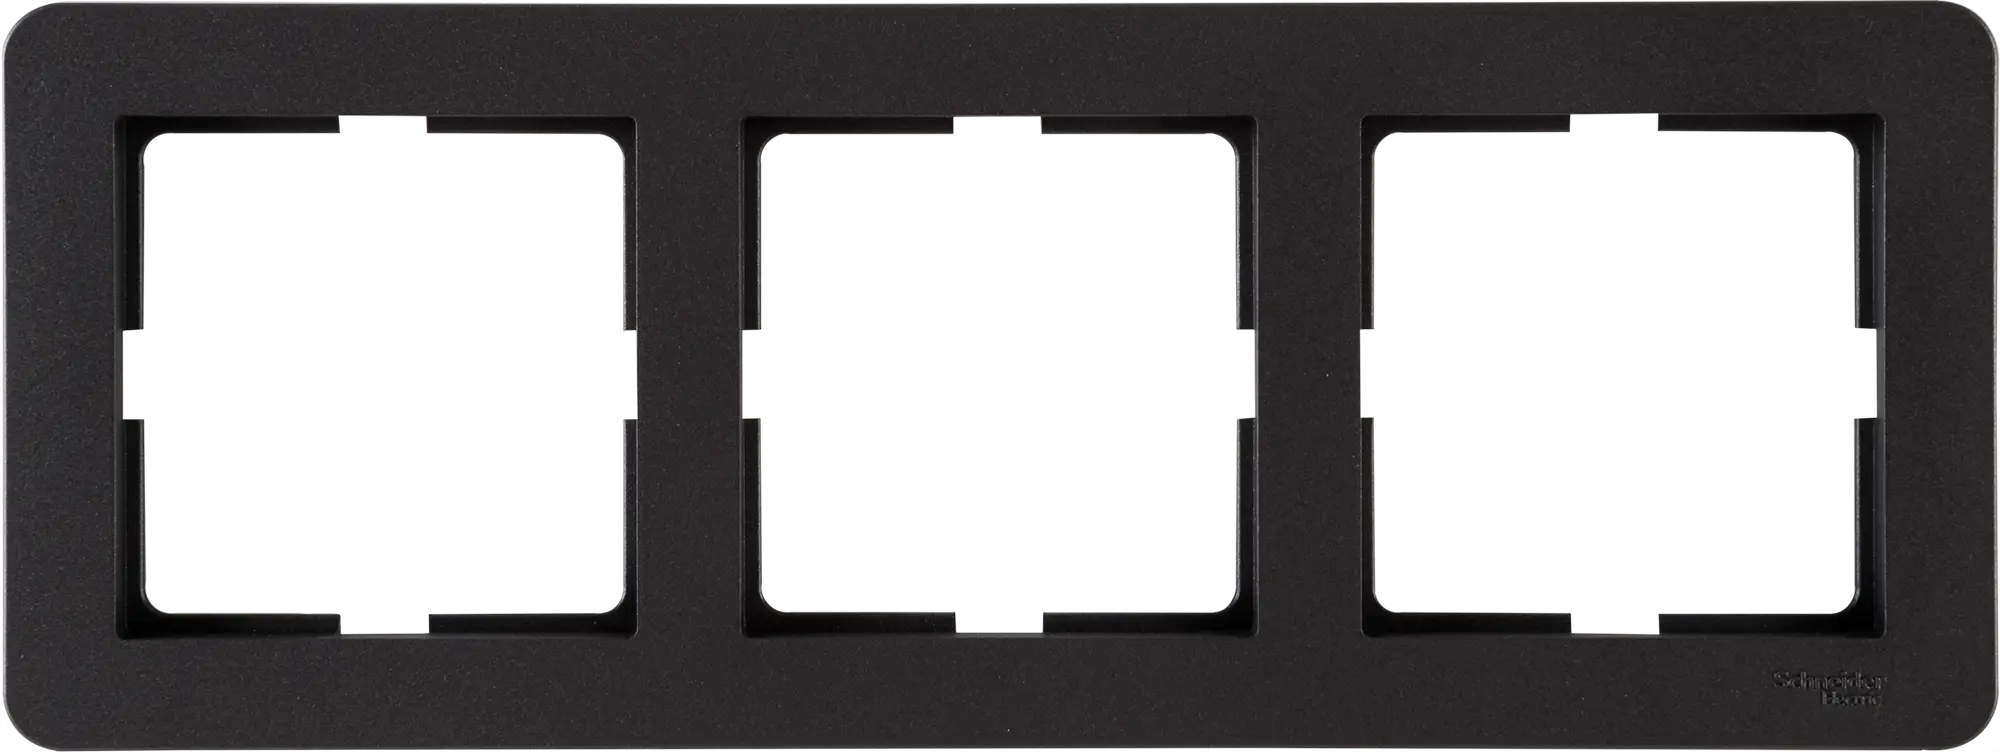 Рамка для розеток и выключателей Schneider Electric W59 Deco 3 поста, цвет графит рамка на 4 поста графит w0042104 werkel